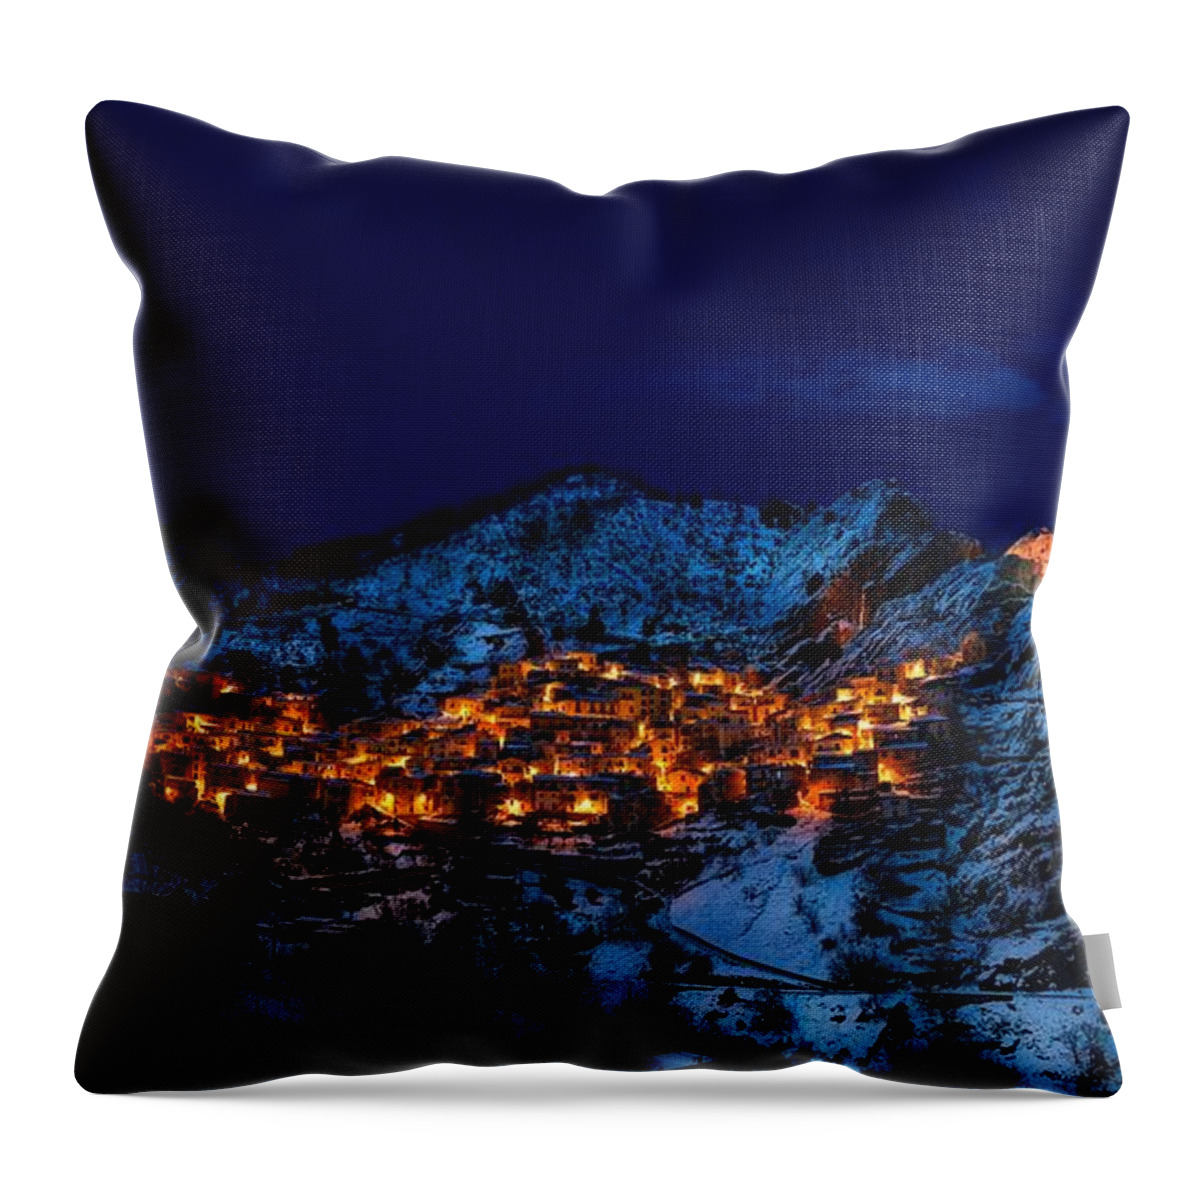 Castelmezzano Throw Pillow featuring the painting Castelmezzano Italy by Alexandra Arts